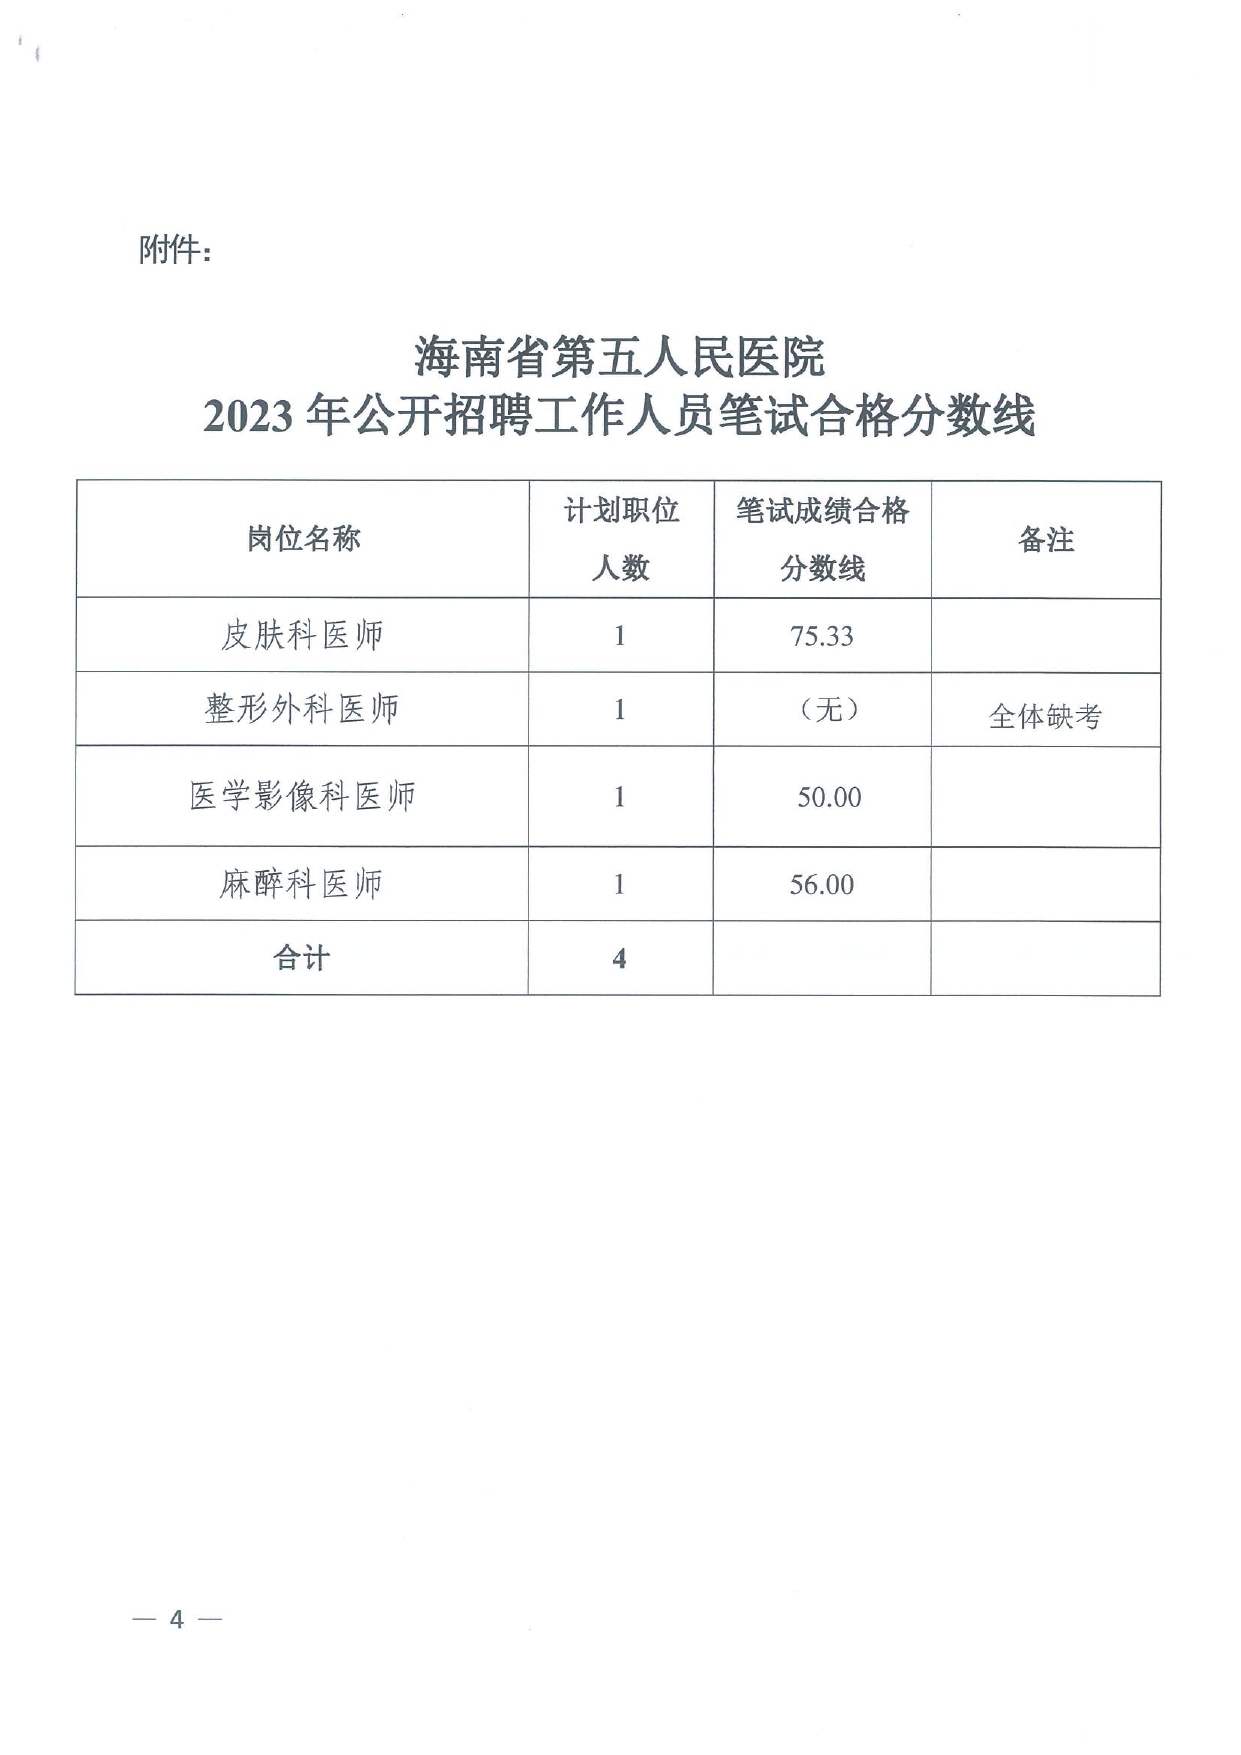 海南省第五人民医院2023年公开招聘工作人员面试公告_page-0004.jpg